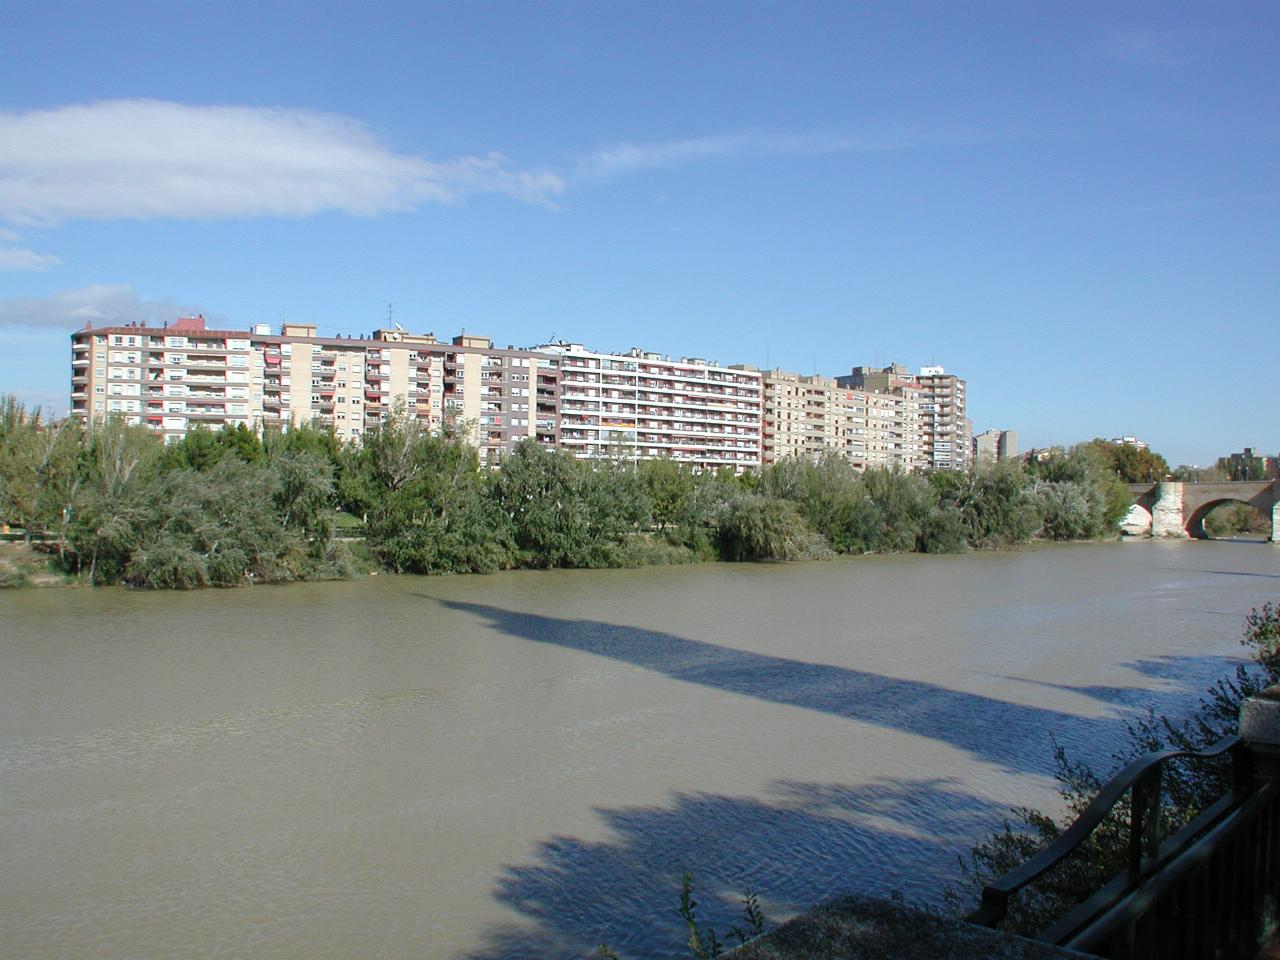 Apartment buildings on Rio Ebro in Zaragoza